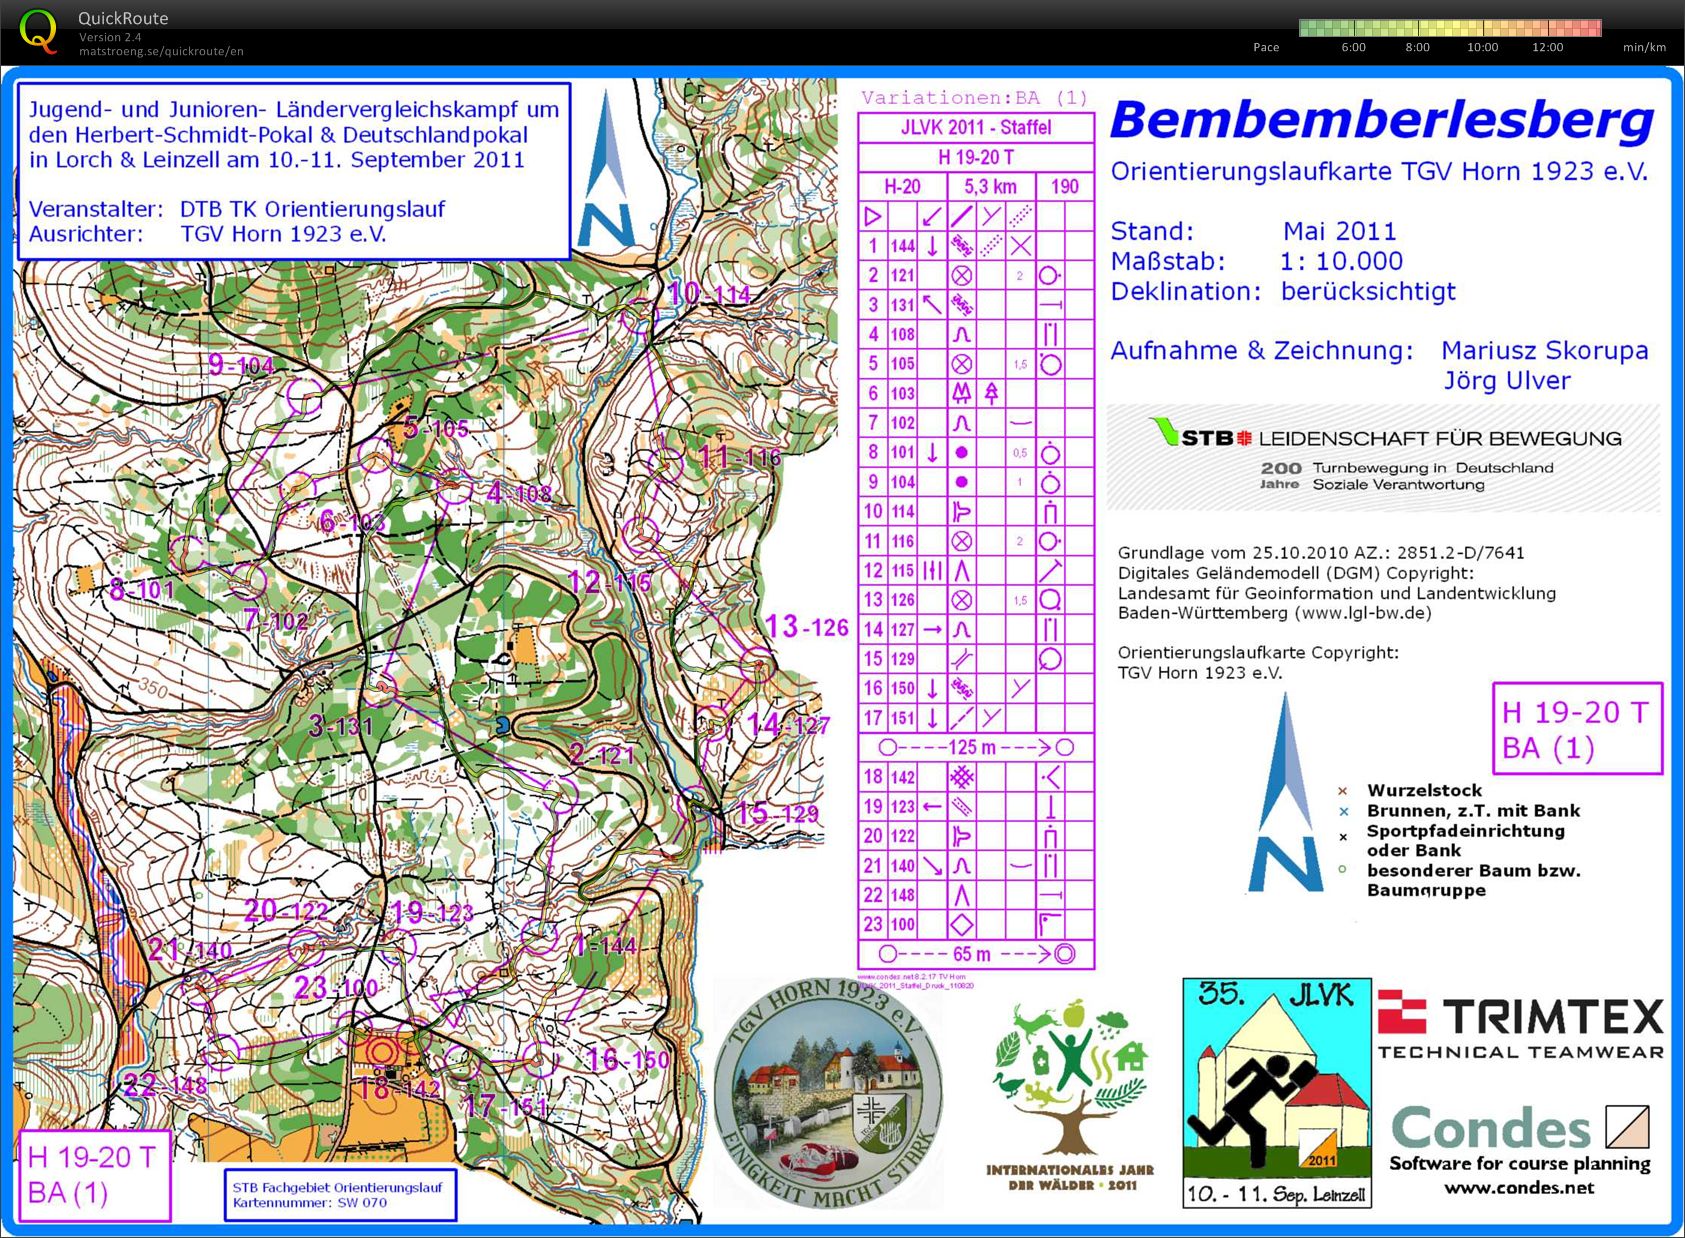 Training Bemberlesberg (2011 JLVK-Relay) (2012-04-01)